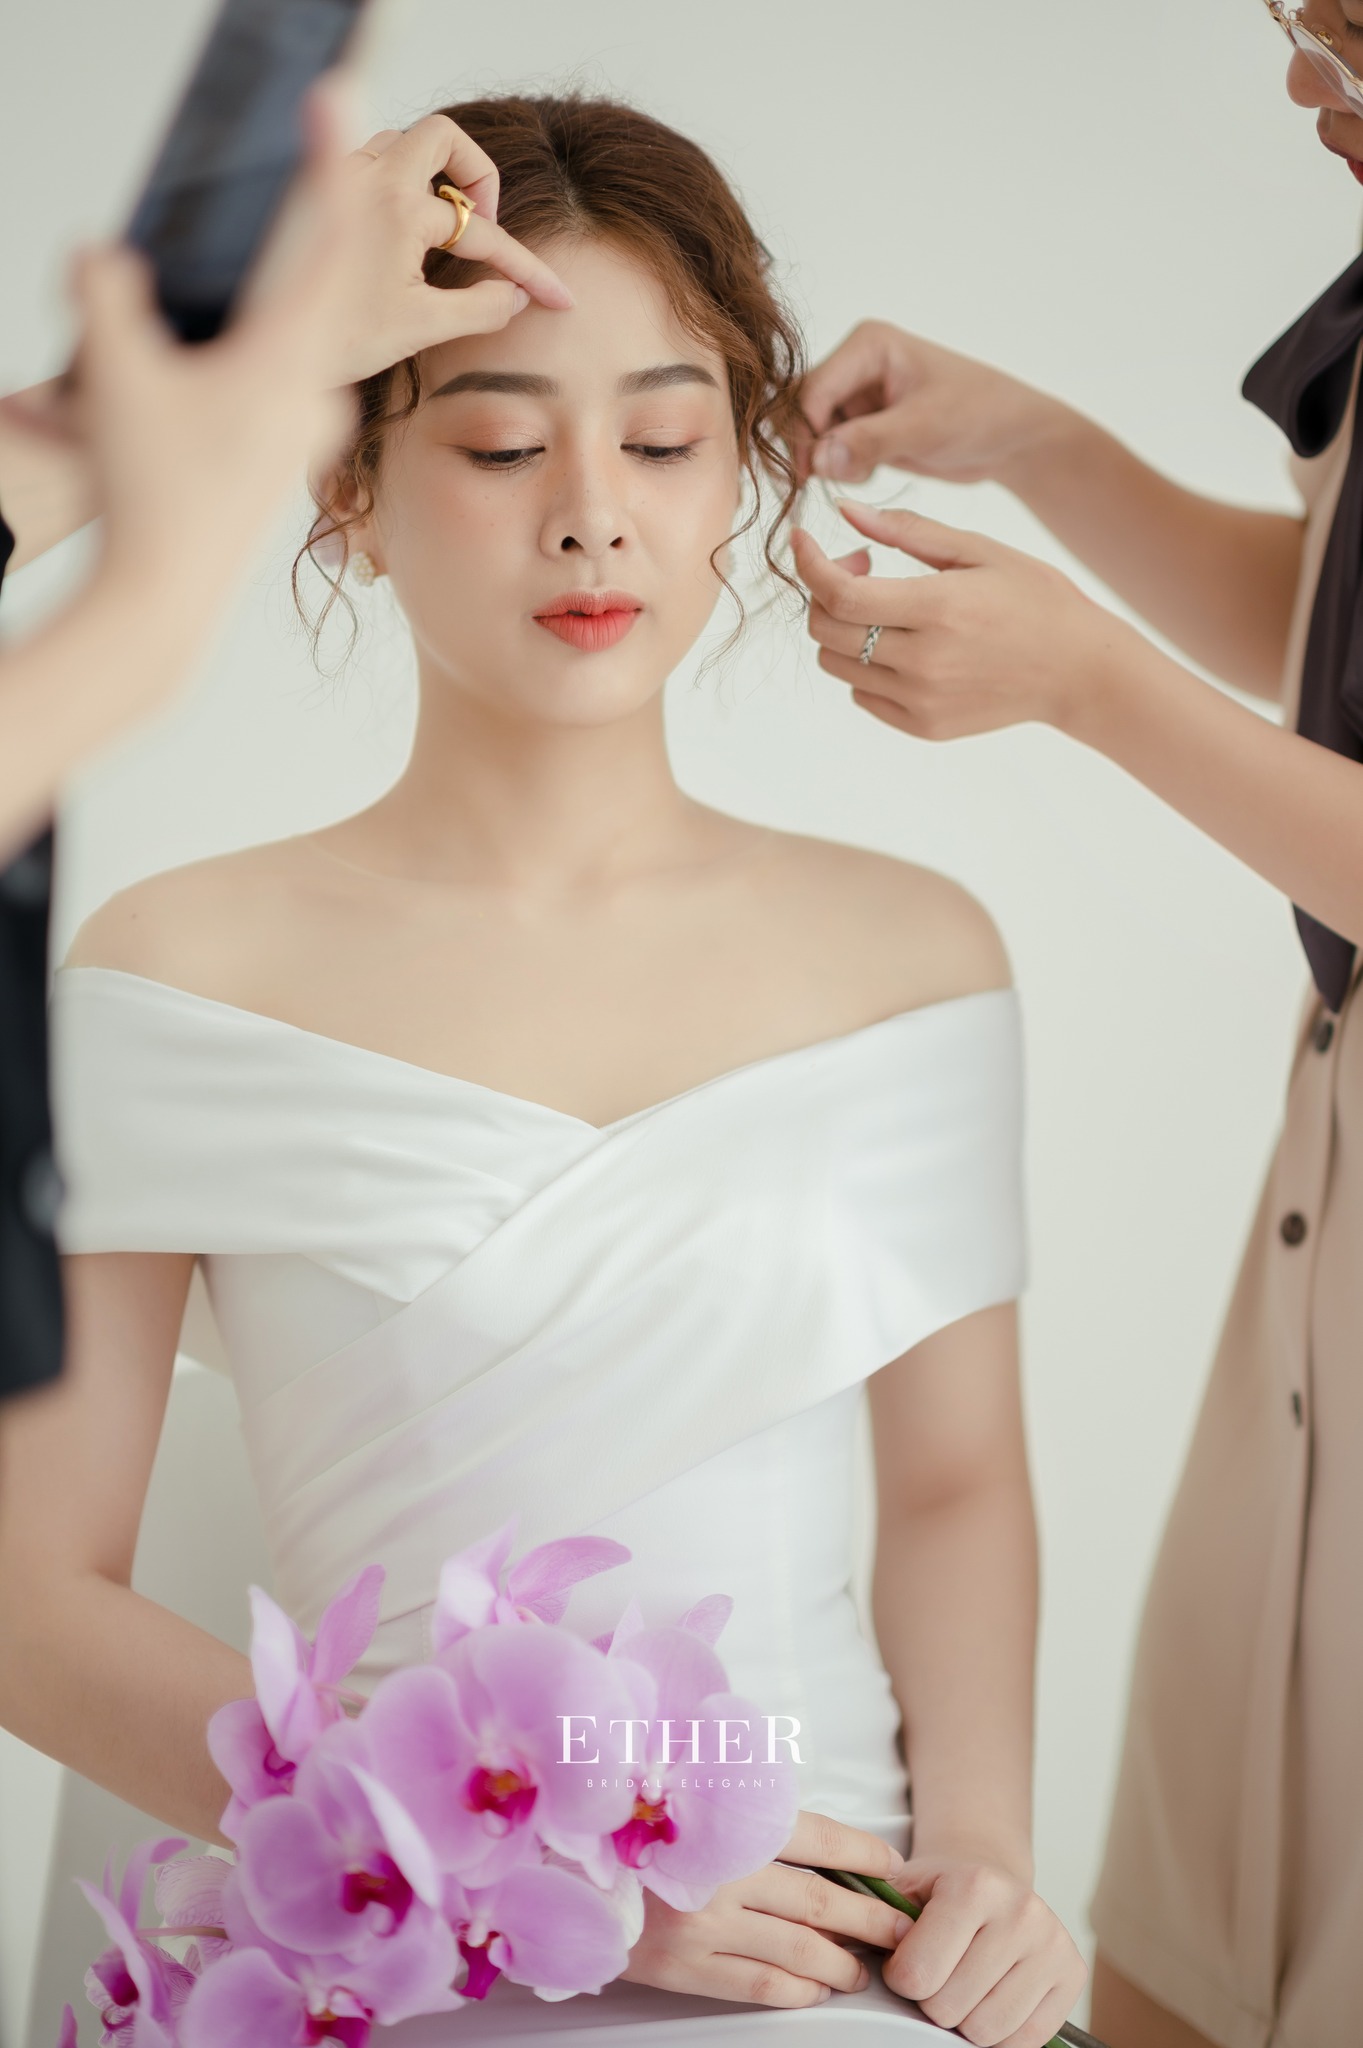 Ether Bridal sử dụng các sản phẩm chất lượng cao và công nghệ làm tóc hiện đại